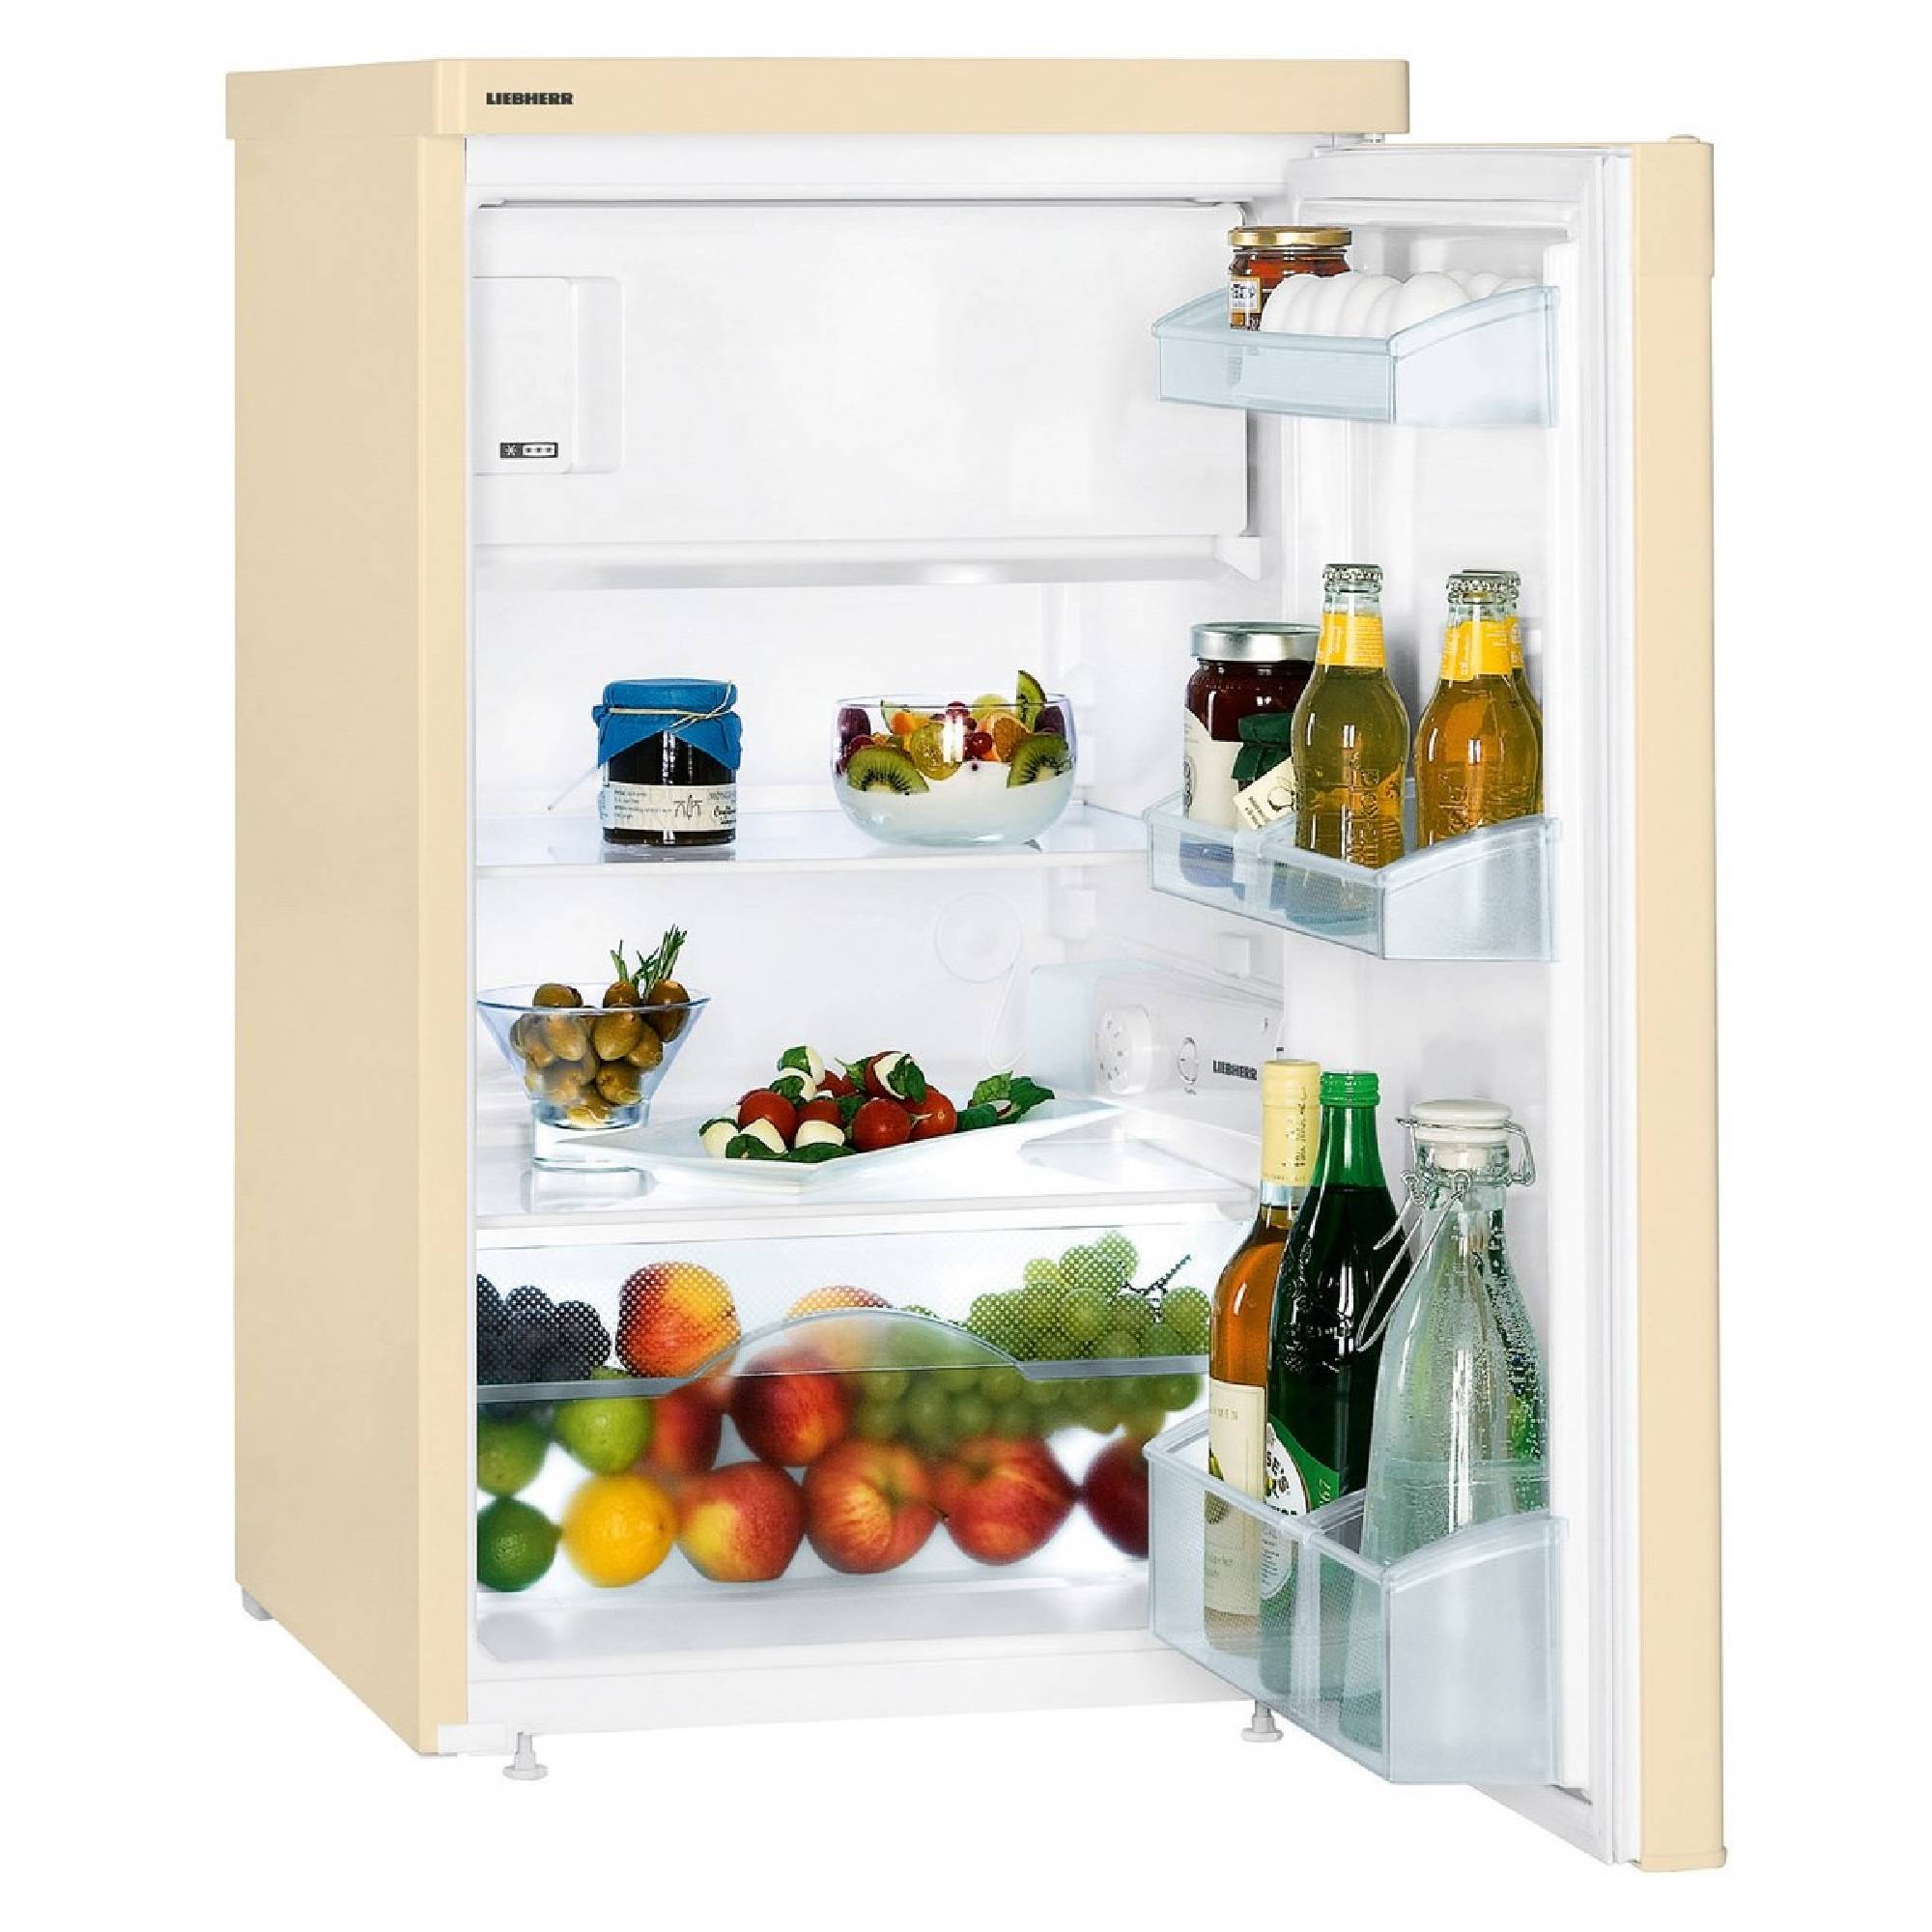 35 лучших холодильников по качеству и надежности